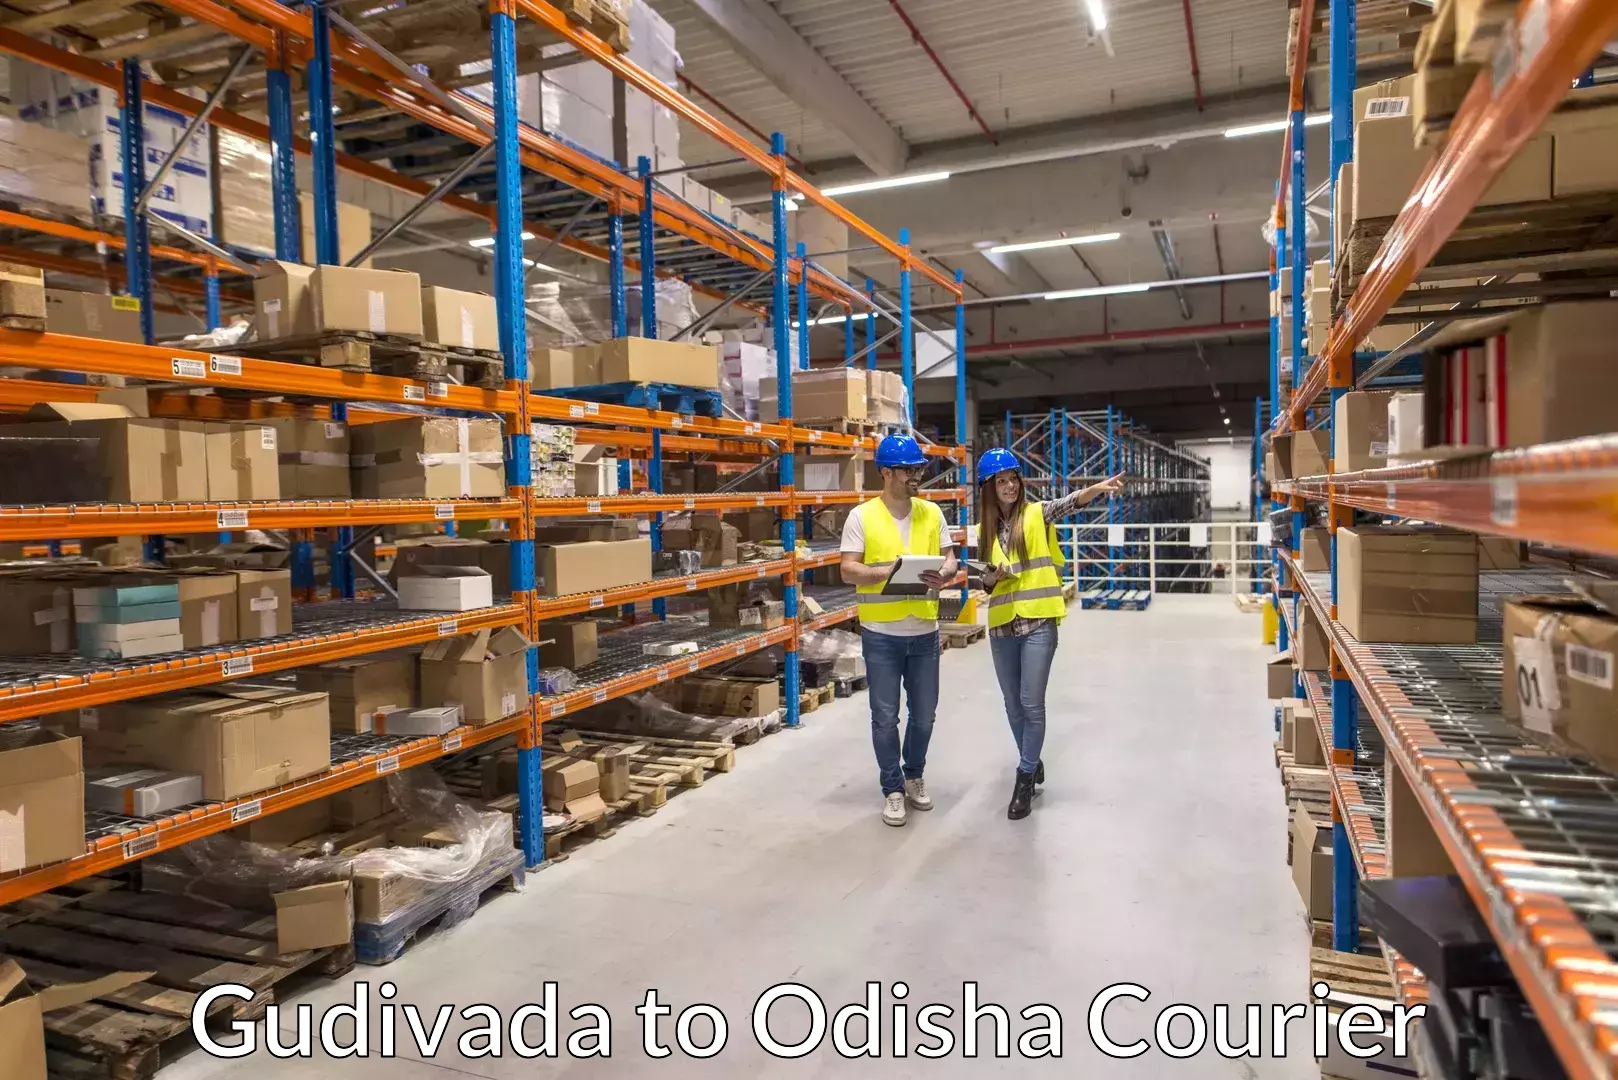 Quality moving company Gudivada to Ganjam